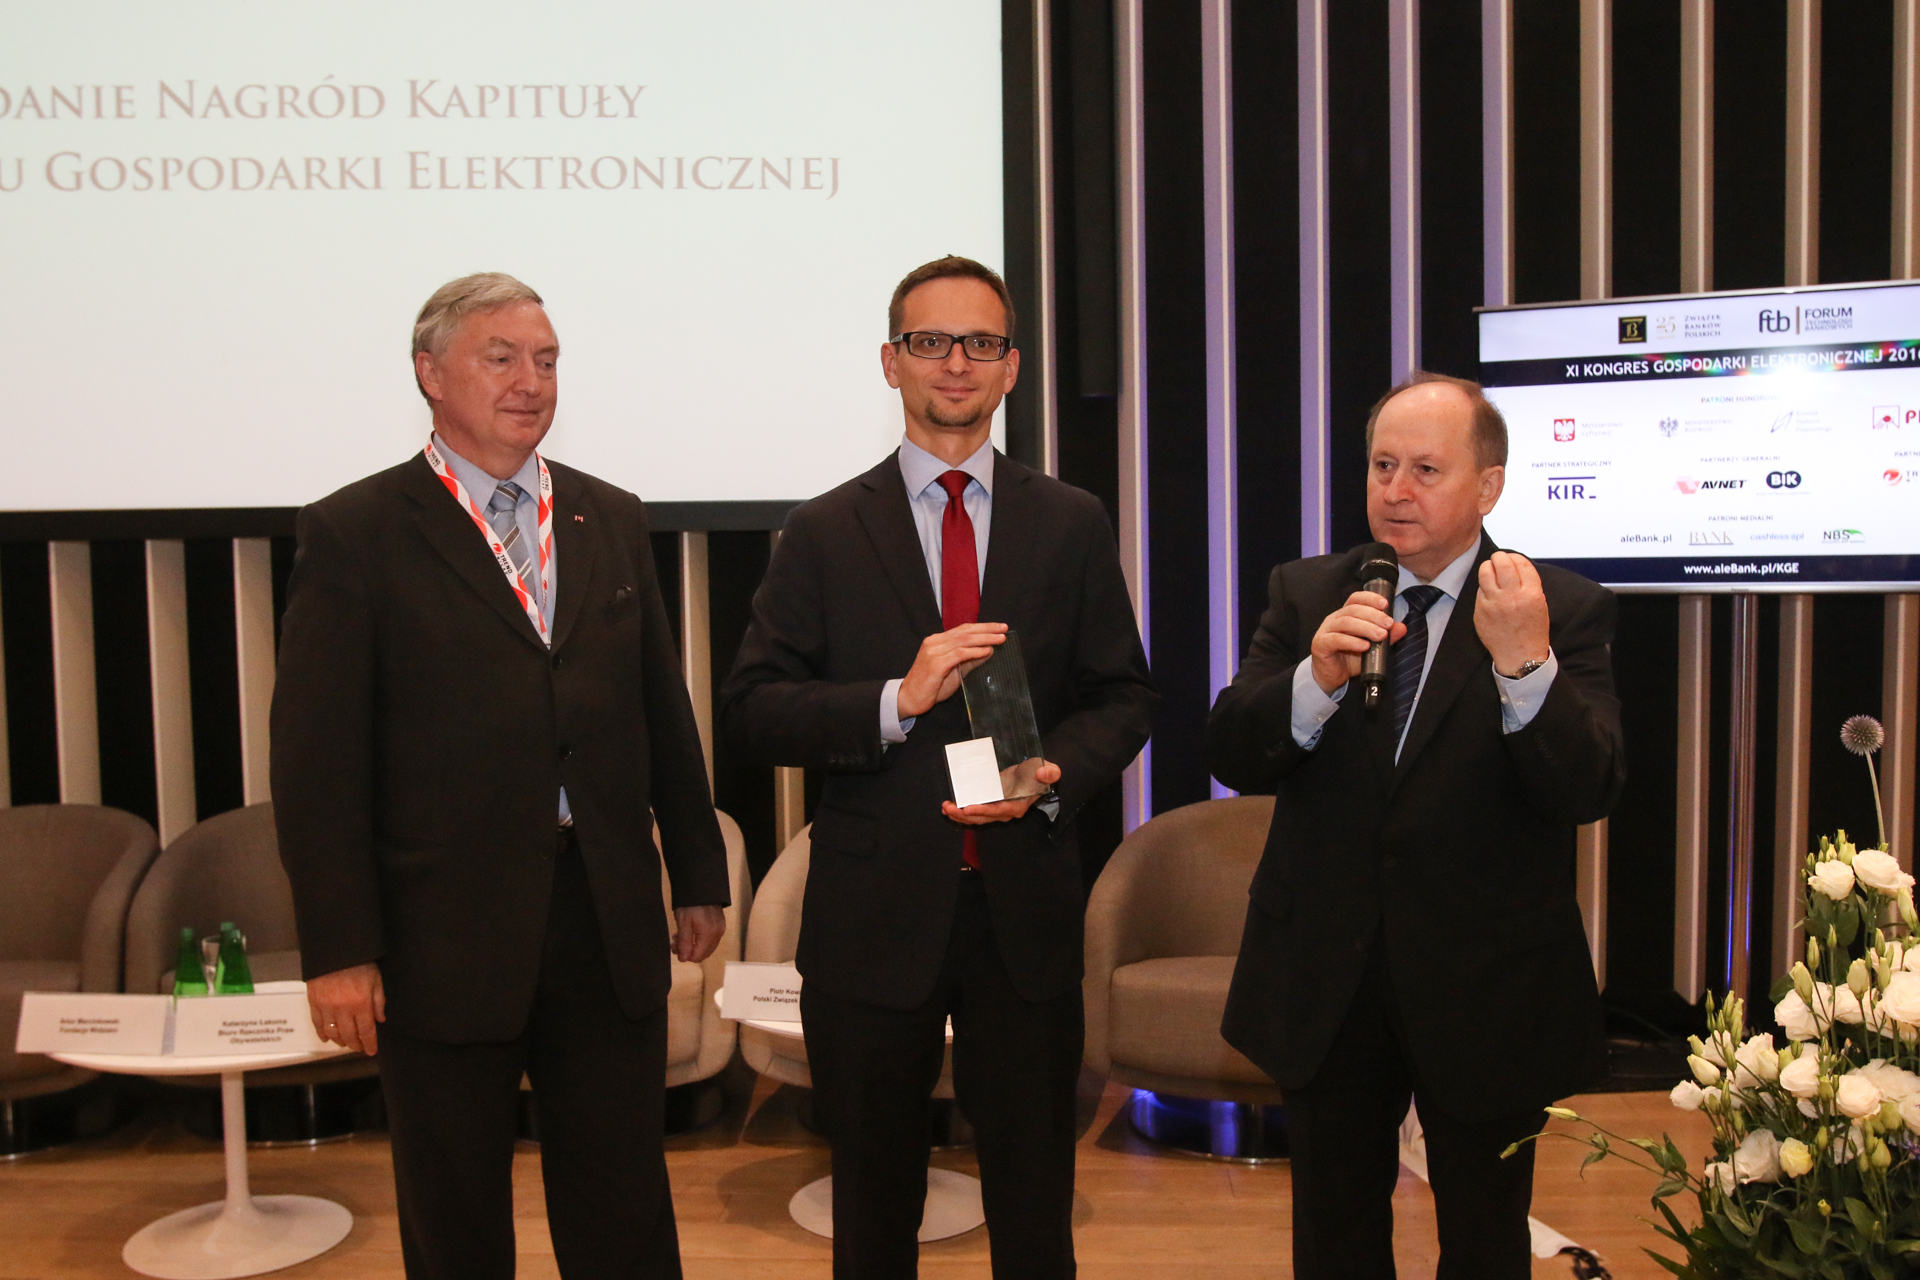 Kapituła XI Kongresu Gospodarki Elektronicznej działająca przy Związku Banków Polskich wybrała PKO Bank Polski Partnerem Roku 2015.